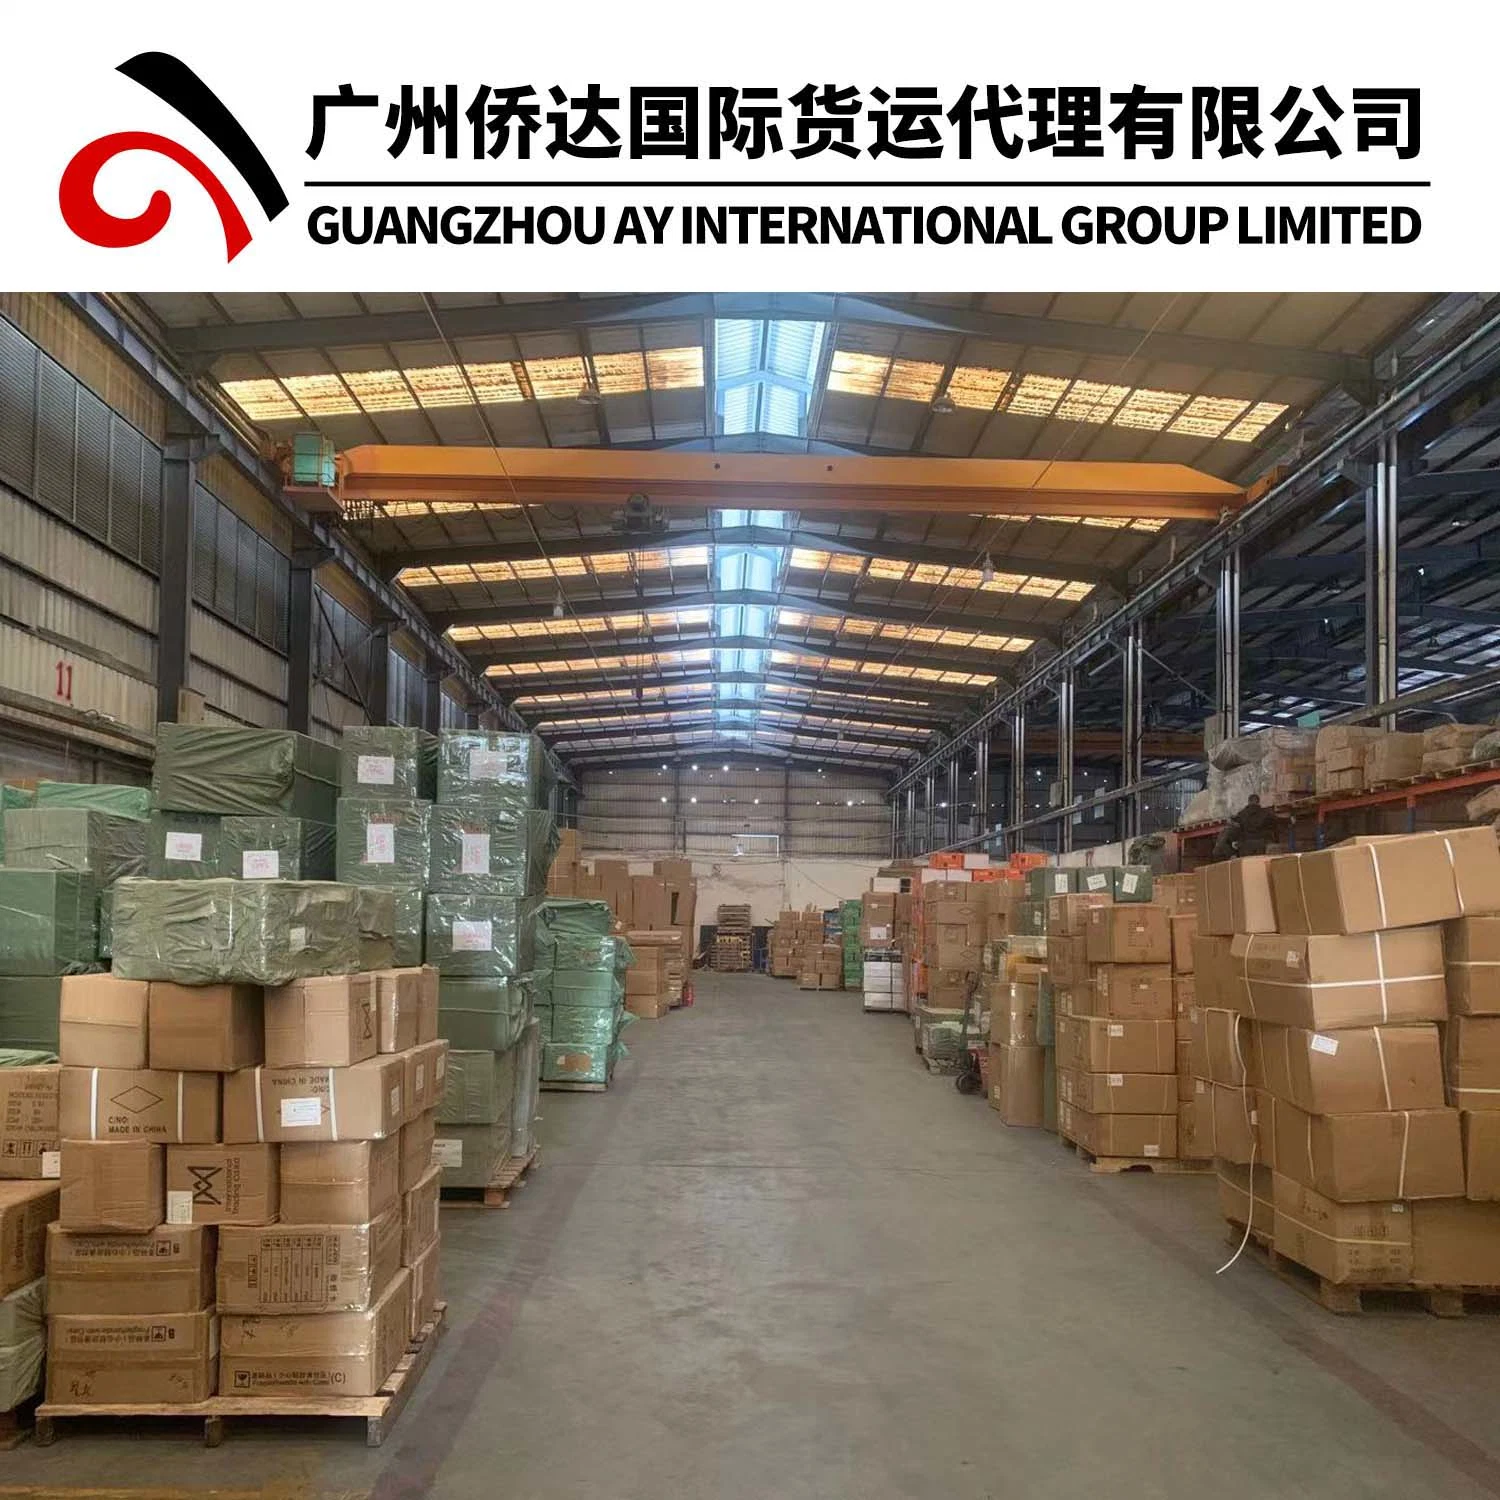 Proveedor de envío profesionales en Guangzhou y Yiwu, China, para todo el mundo por aire